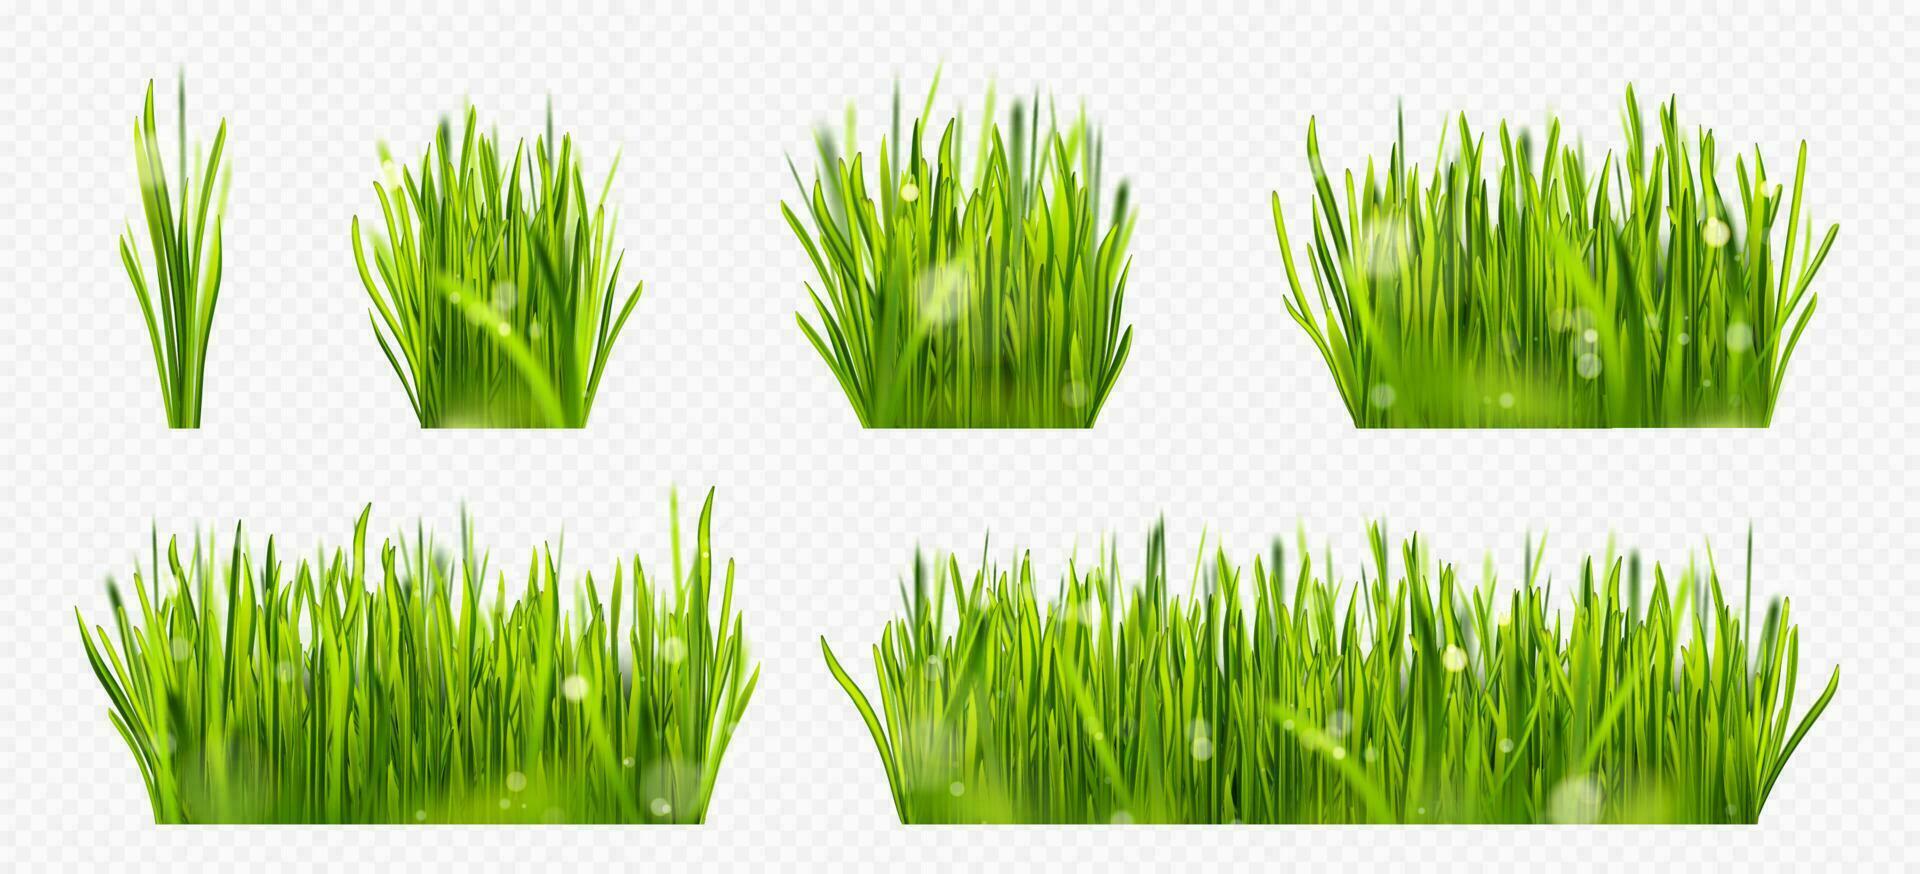 réaliste vert pelouse herbe frontière avec Soleil lumière vecteur